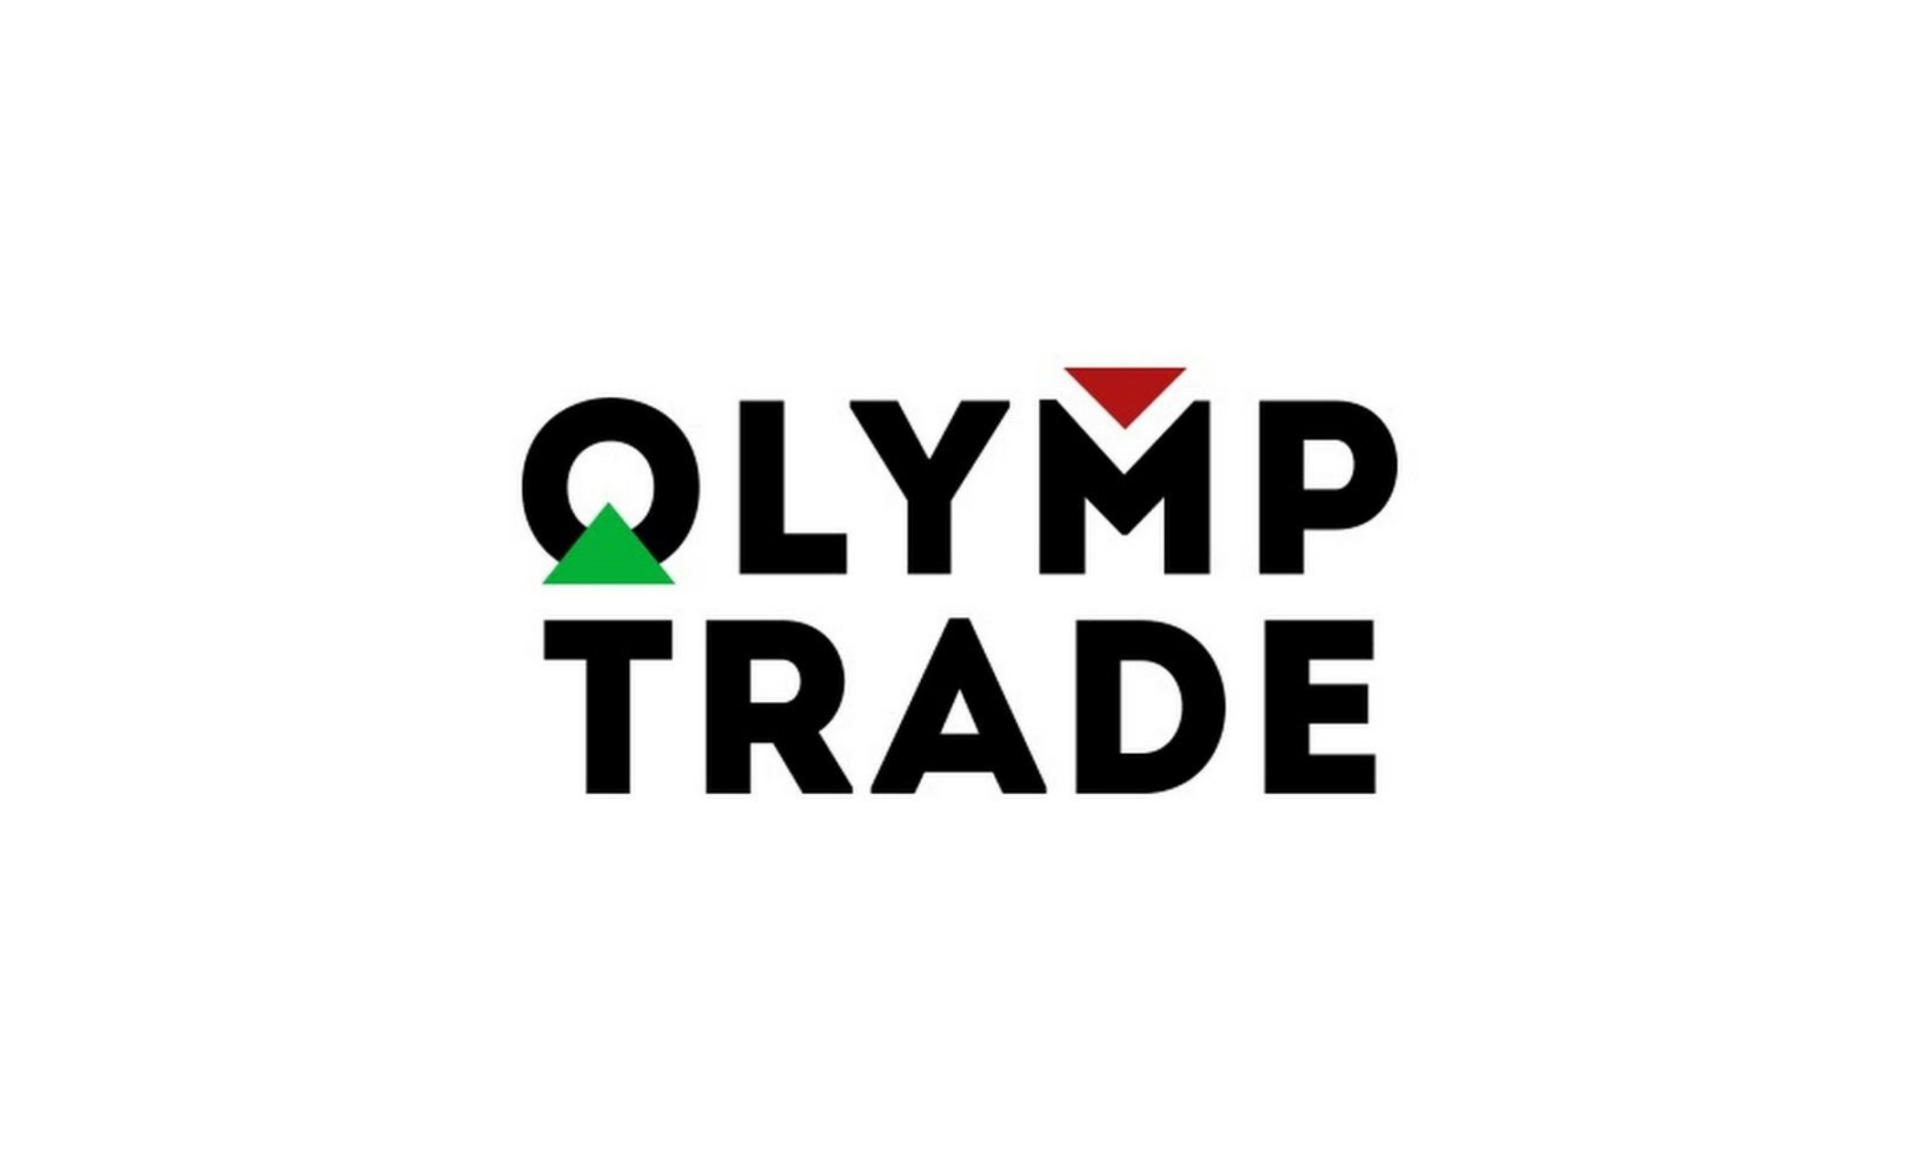 Olymp trade legal in uae